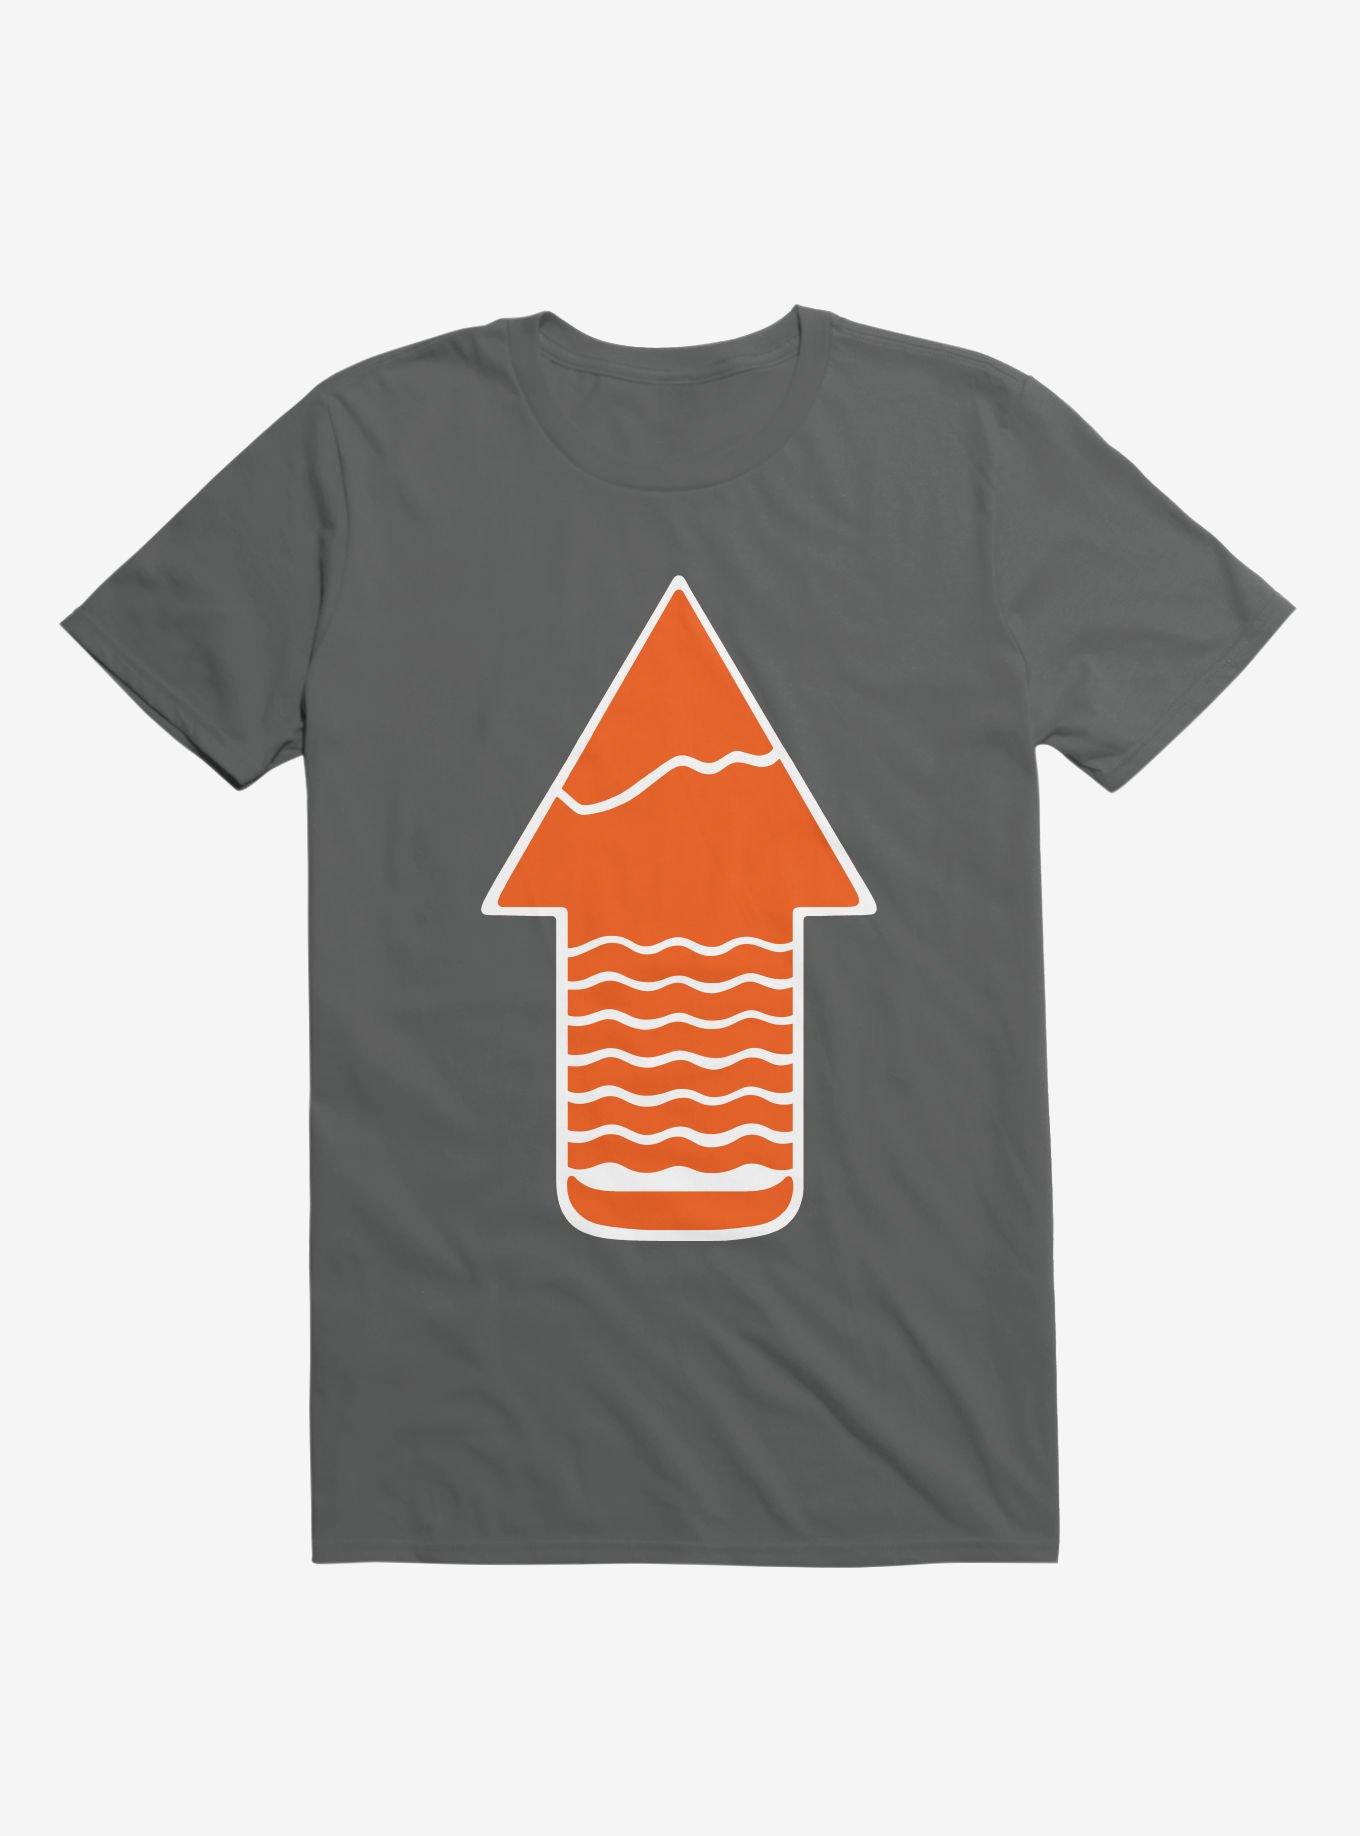 Take A Hike Up Arrow Art T-Shirt